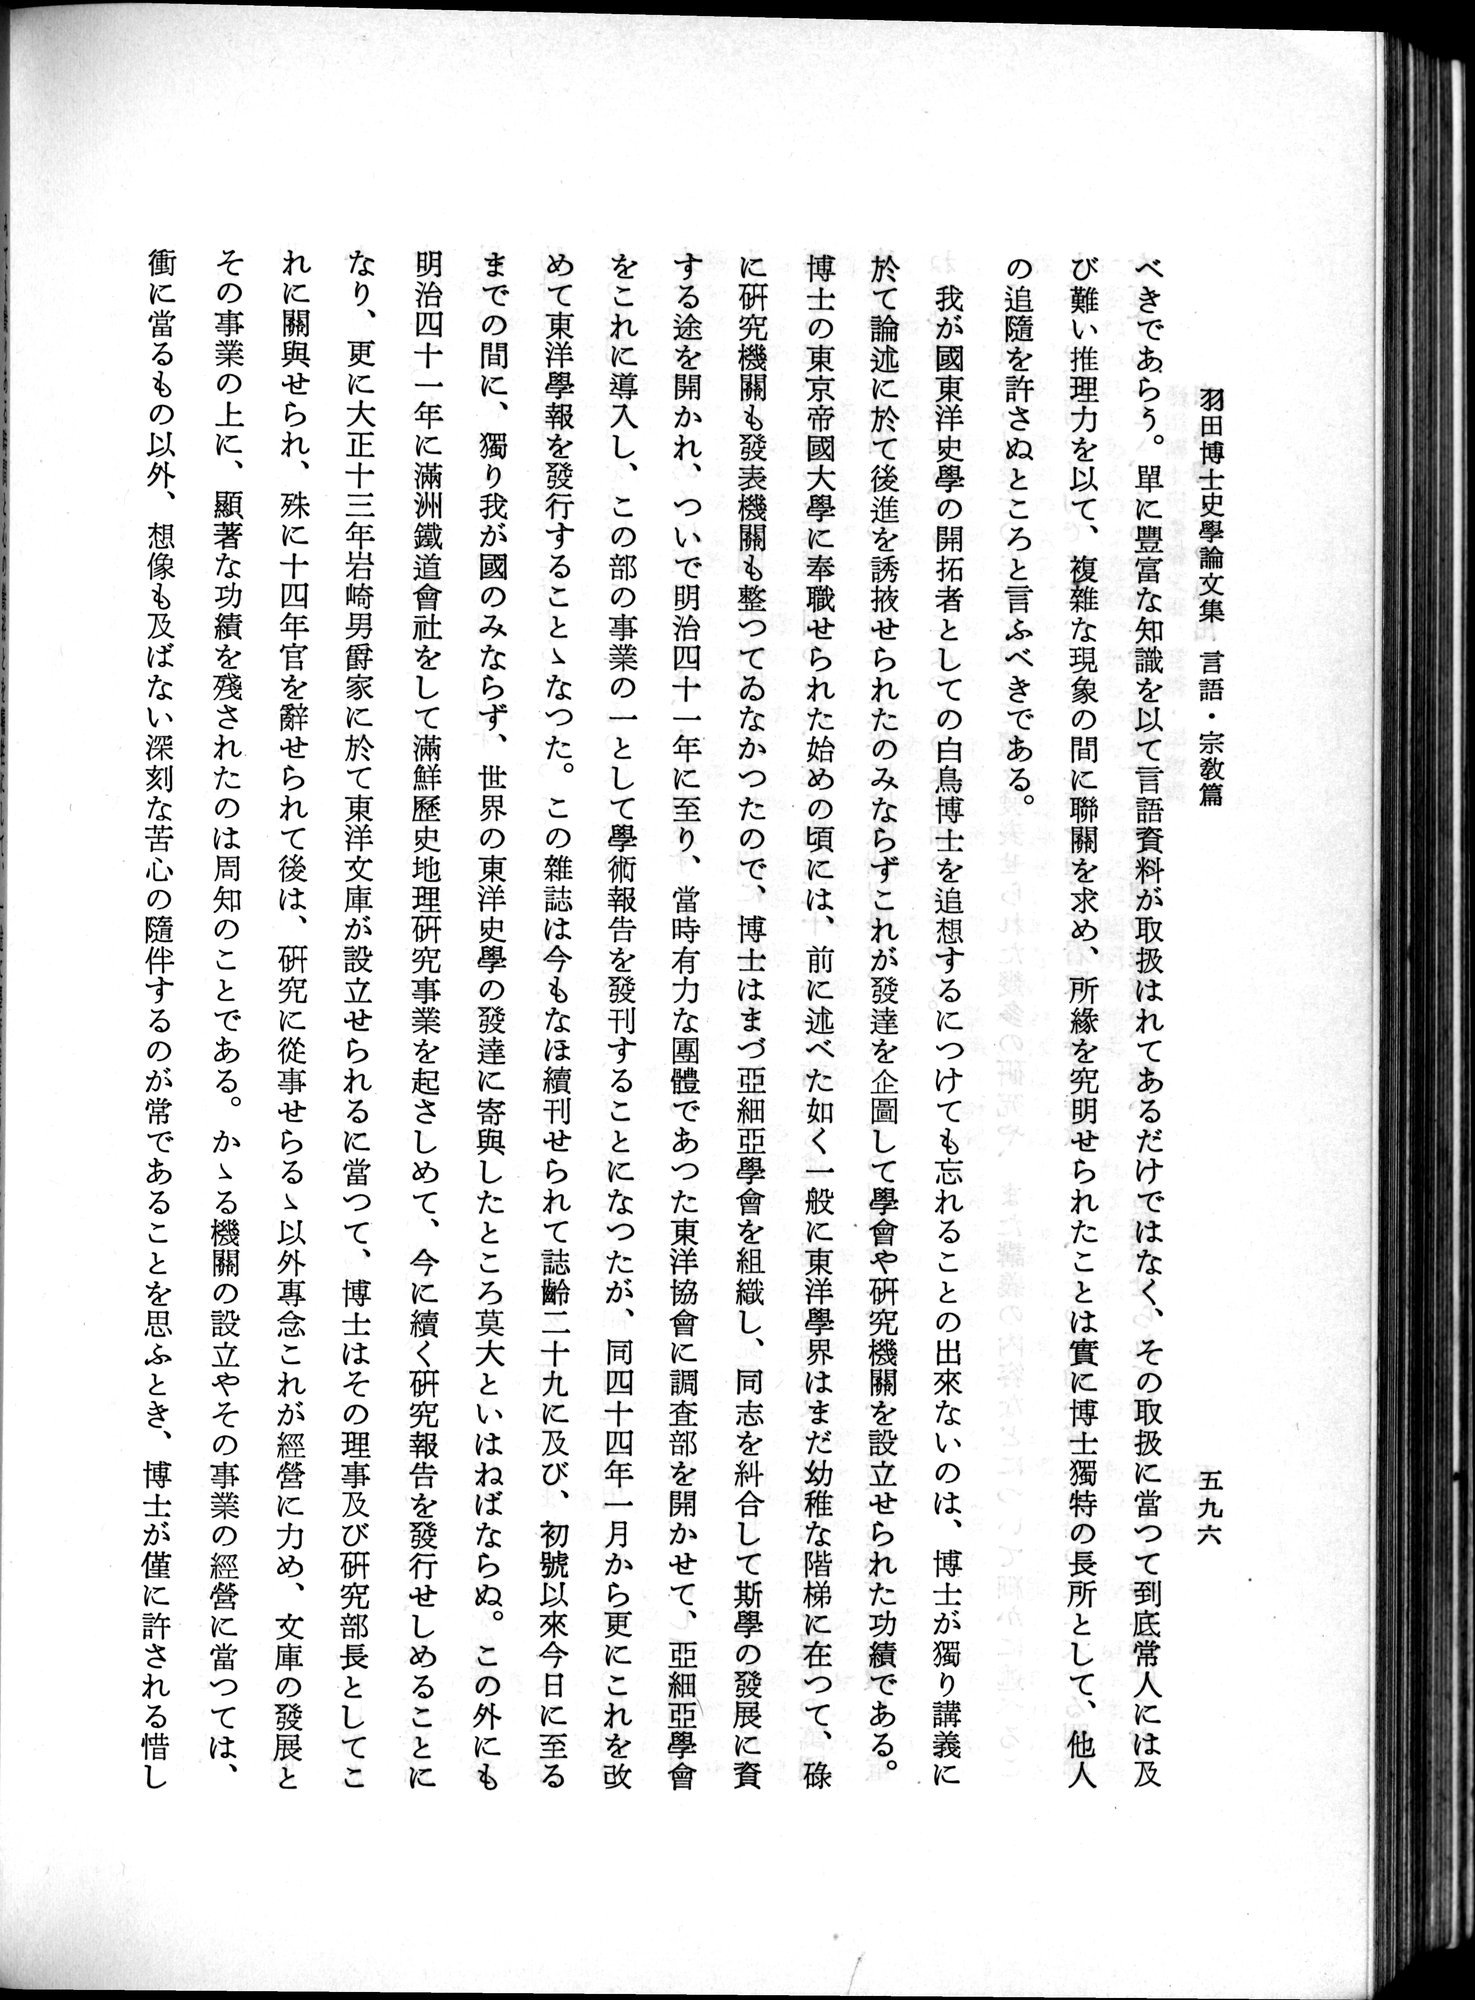 羽田博士史学論文集 : vol.2 / Page 660 (Grayscale High Resolution Image)